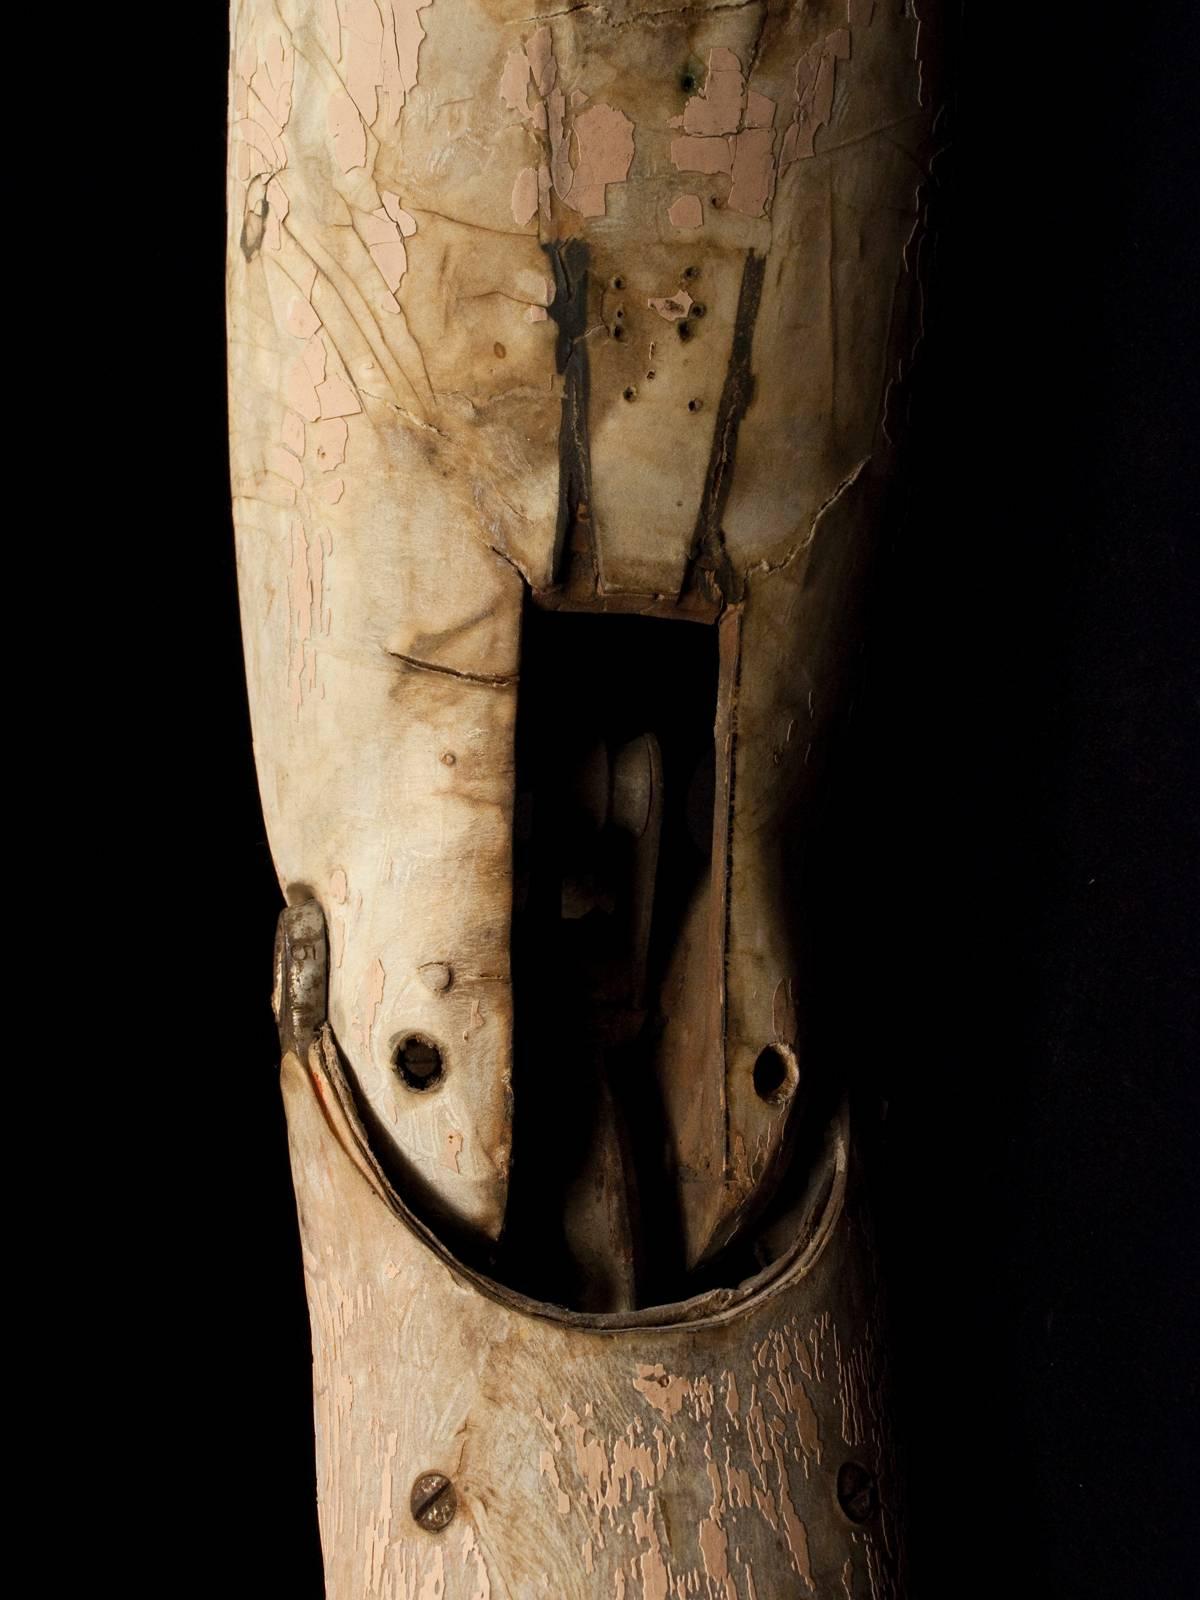 wooden peg leg prosthetic